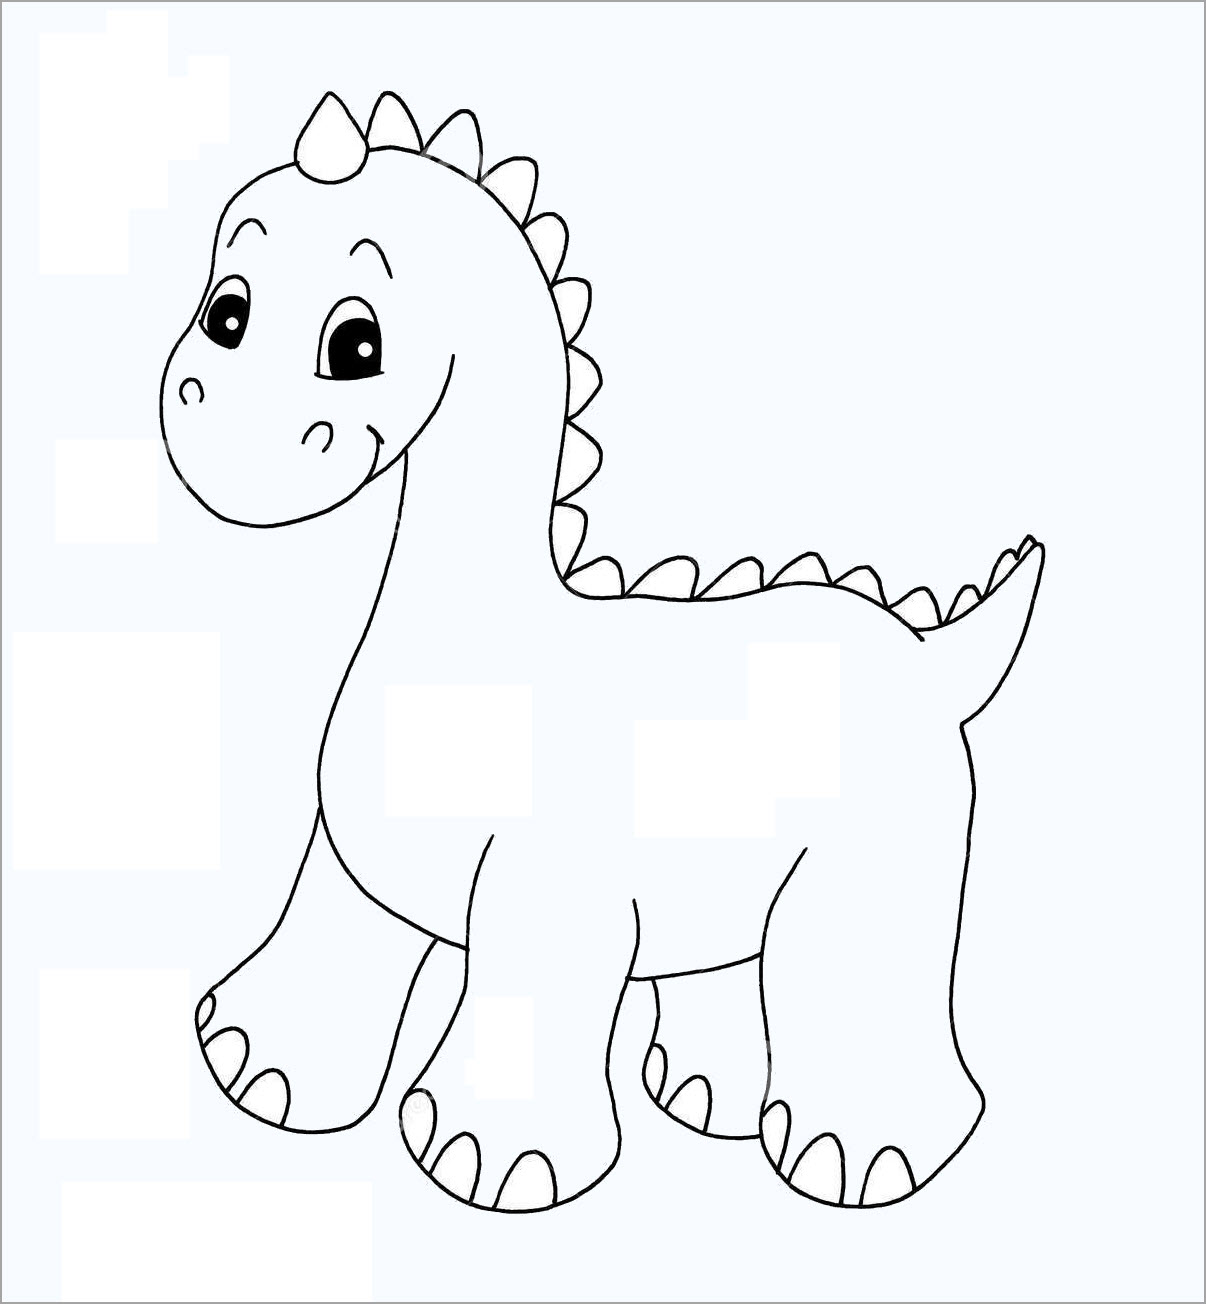 Tổng hợp 90+ Mẫu tranh tô màu khủng long cho bé mới nhất - Tô màu trực tuyến